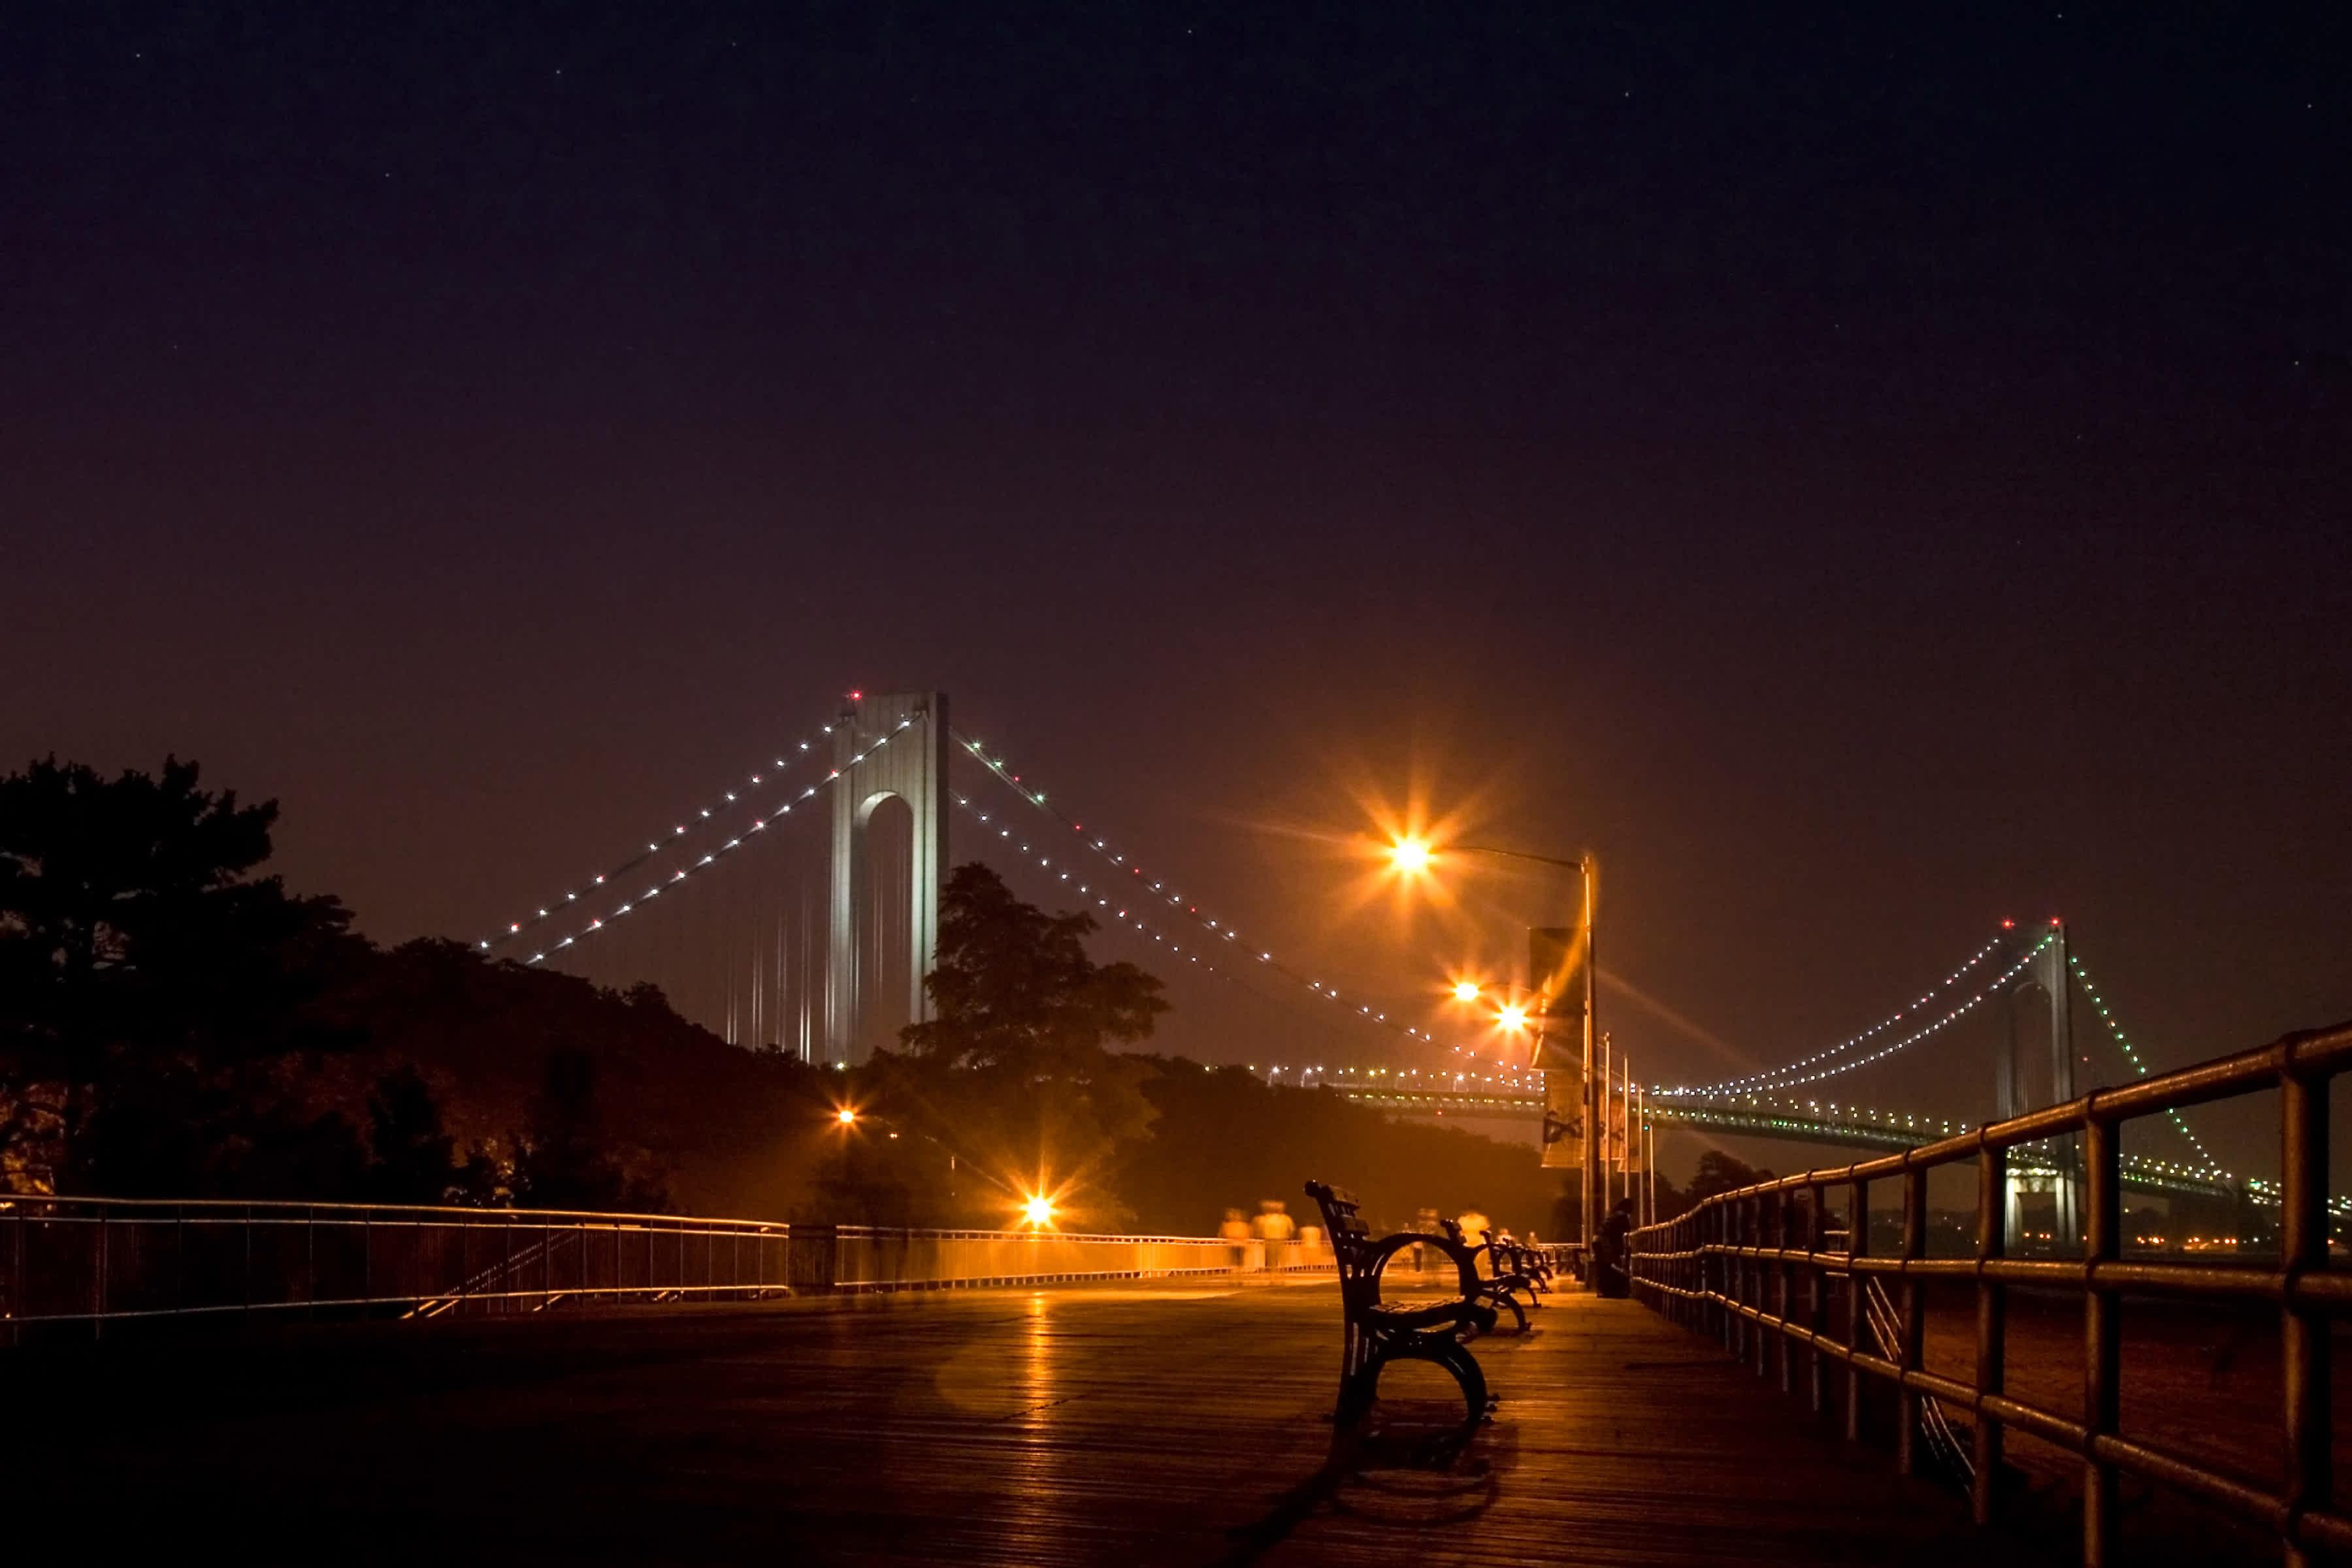 The Verrazano-Narrows Bridge at night